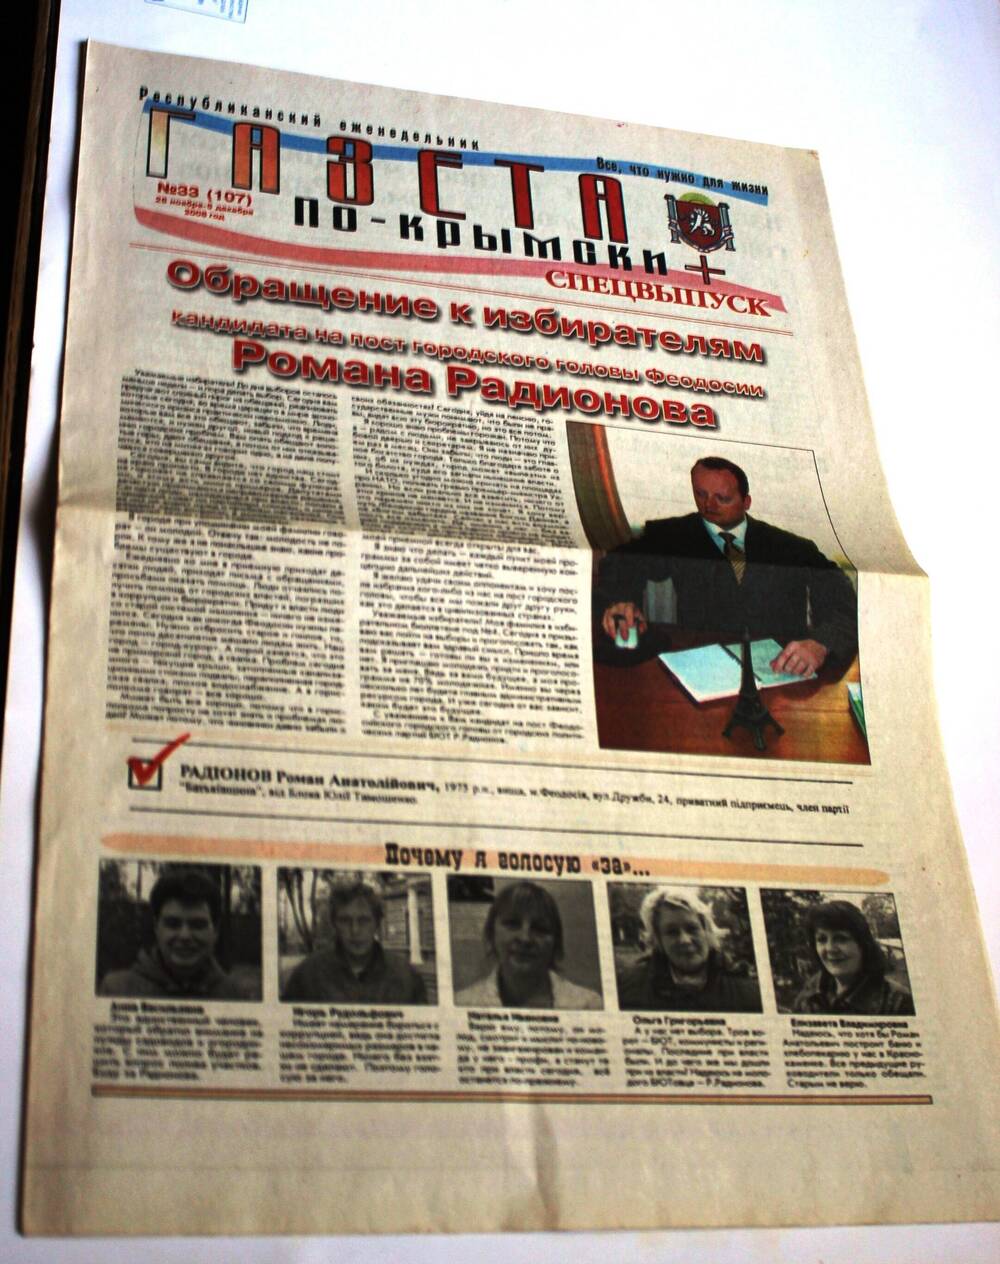 Газета По крымски + № 33 (107) 26 ноября - 5 декабря 2008 г.(Республиканский еженедельник). Спецвыпуск.